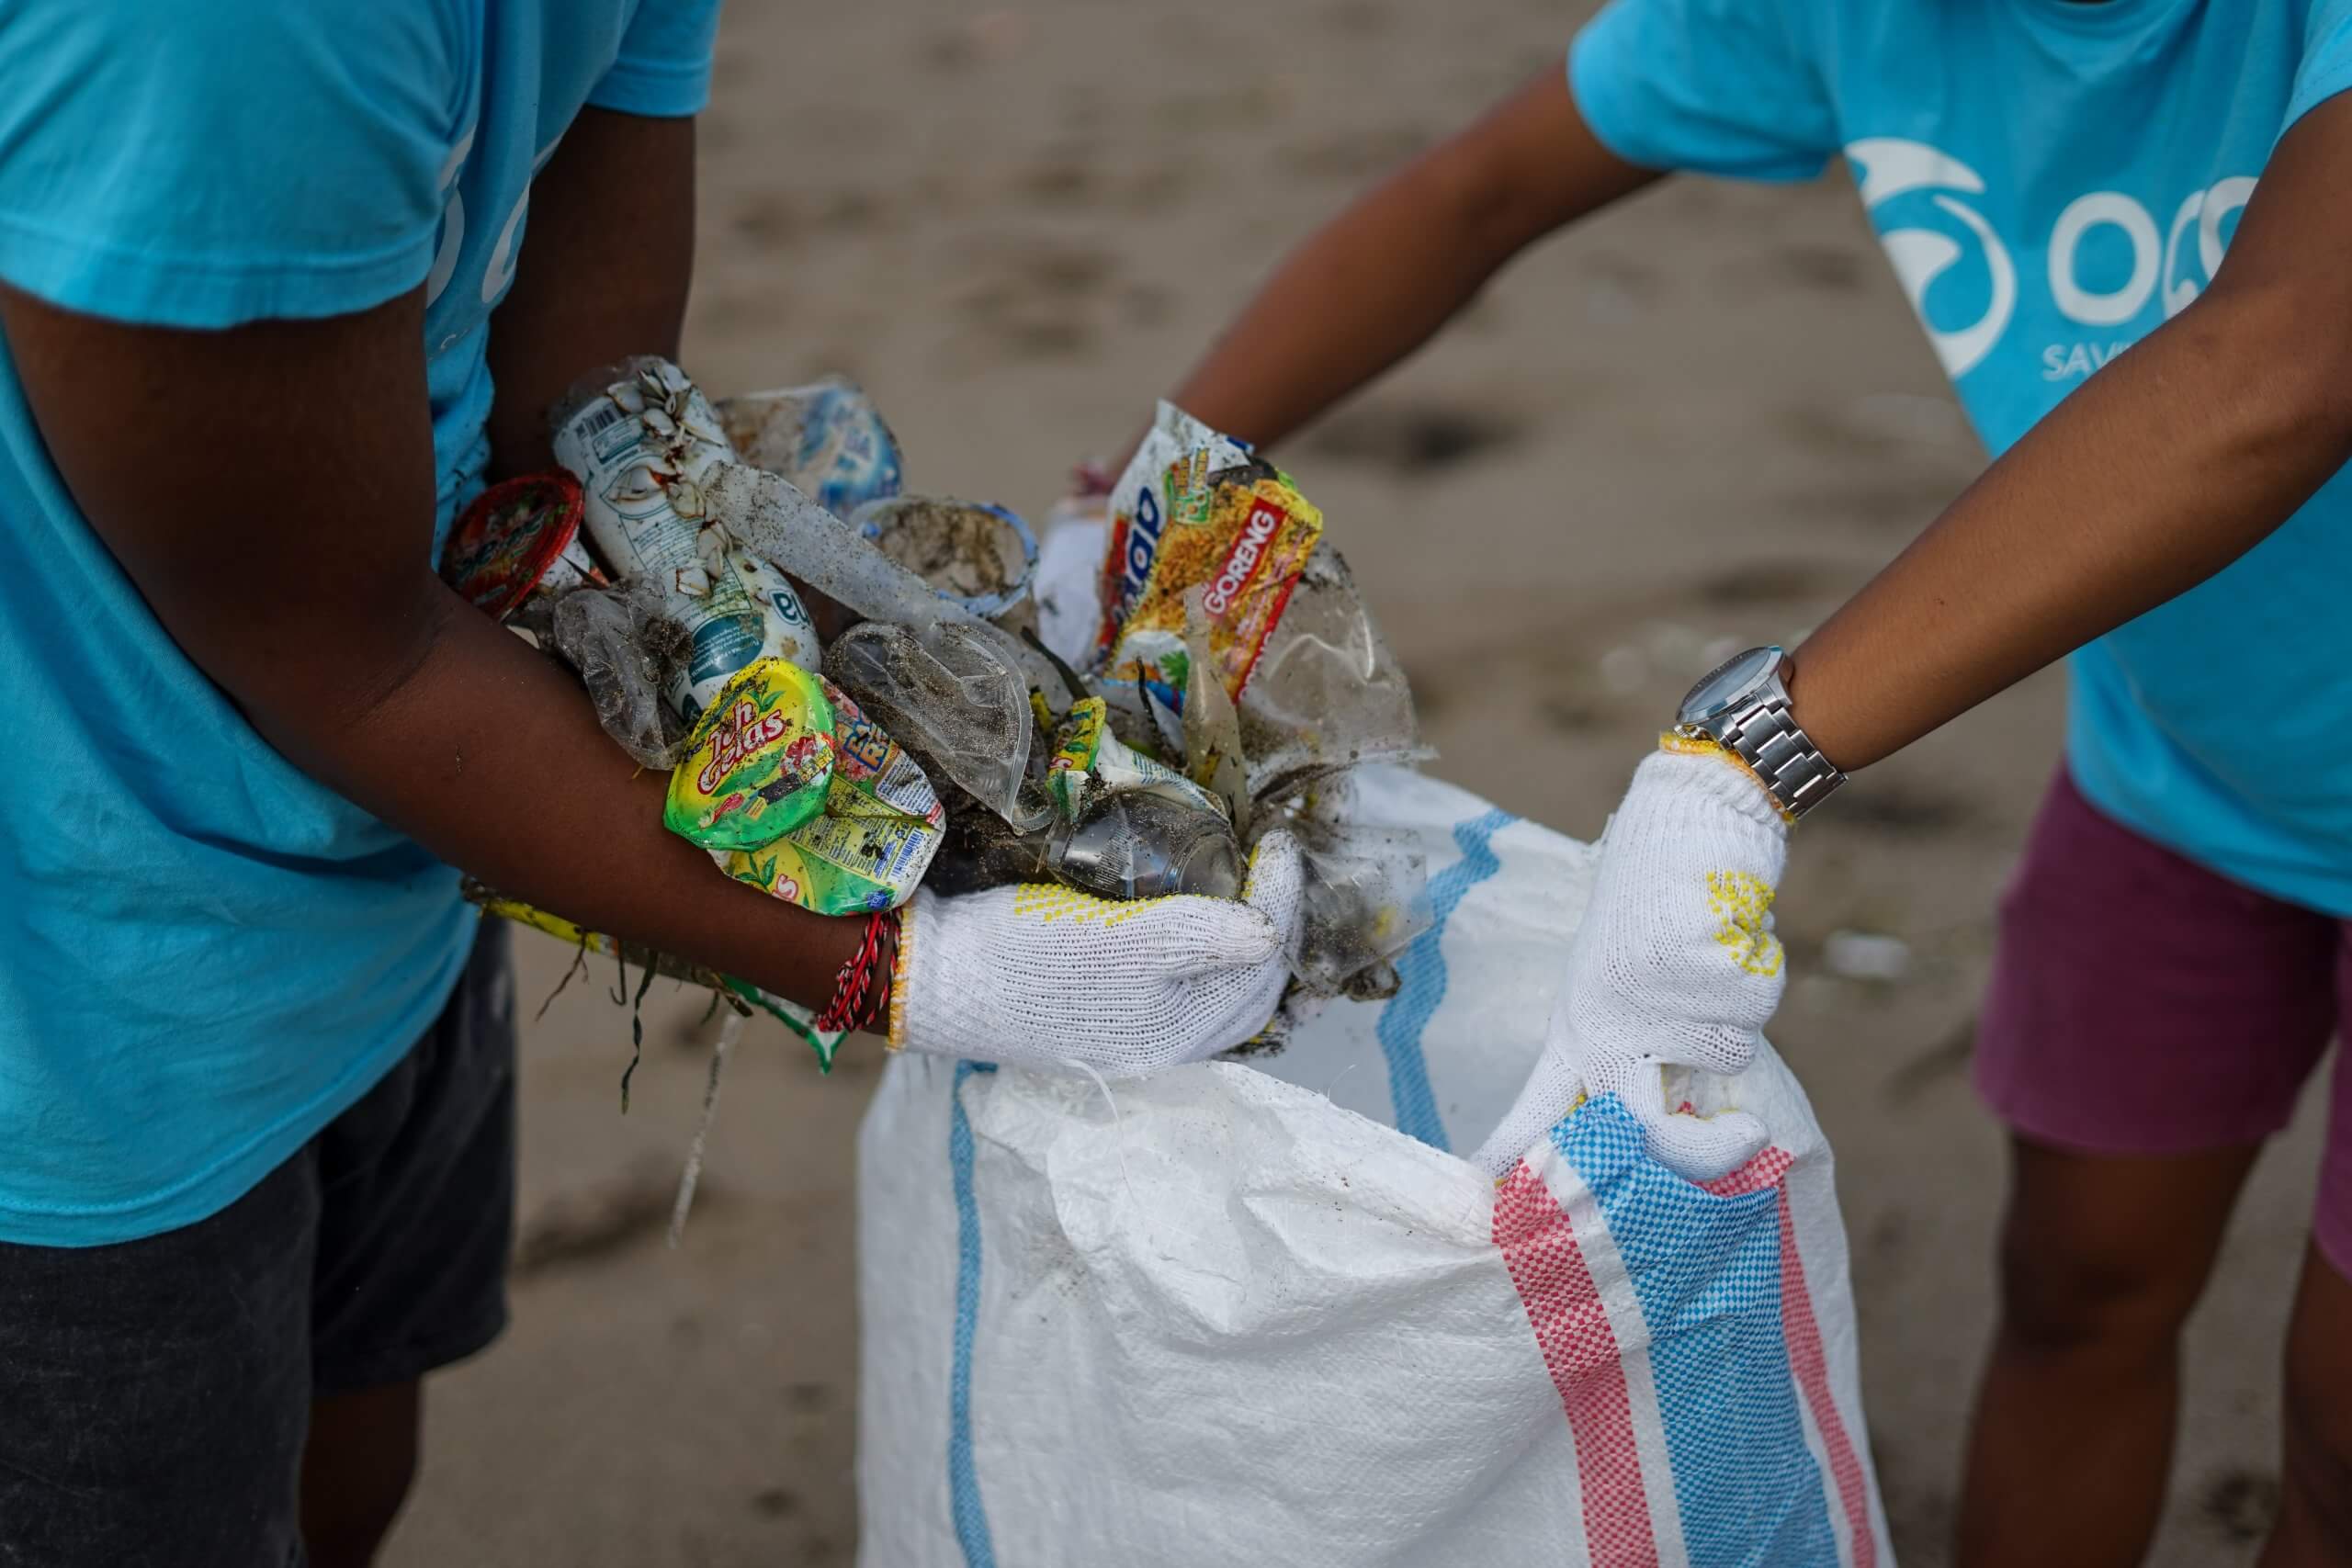 "استعمار القمامة" هو مصطلح يصف إلقاء المواد الملوثة من قبل الدول الغنية في الدول الفقيرة. تصوير OCG إنقاذ المحيط على Unsplash